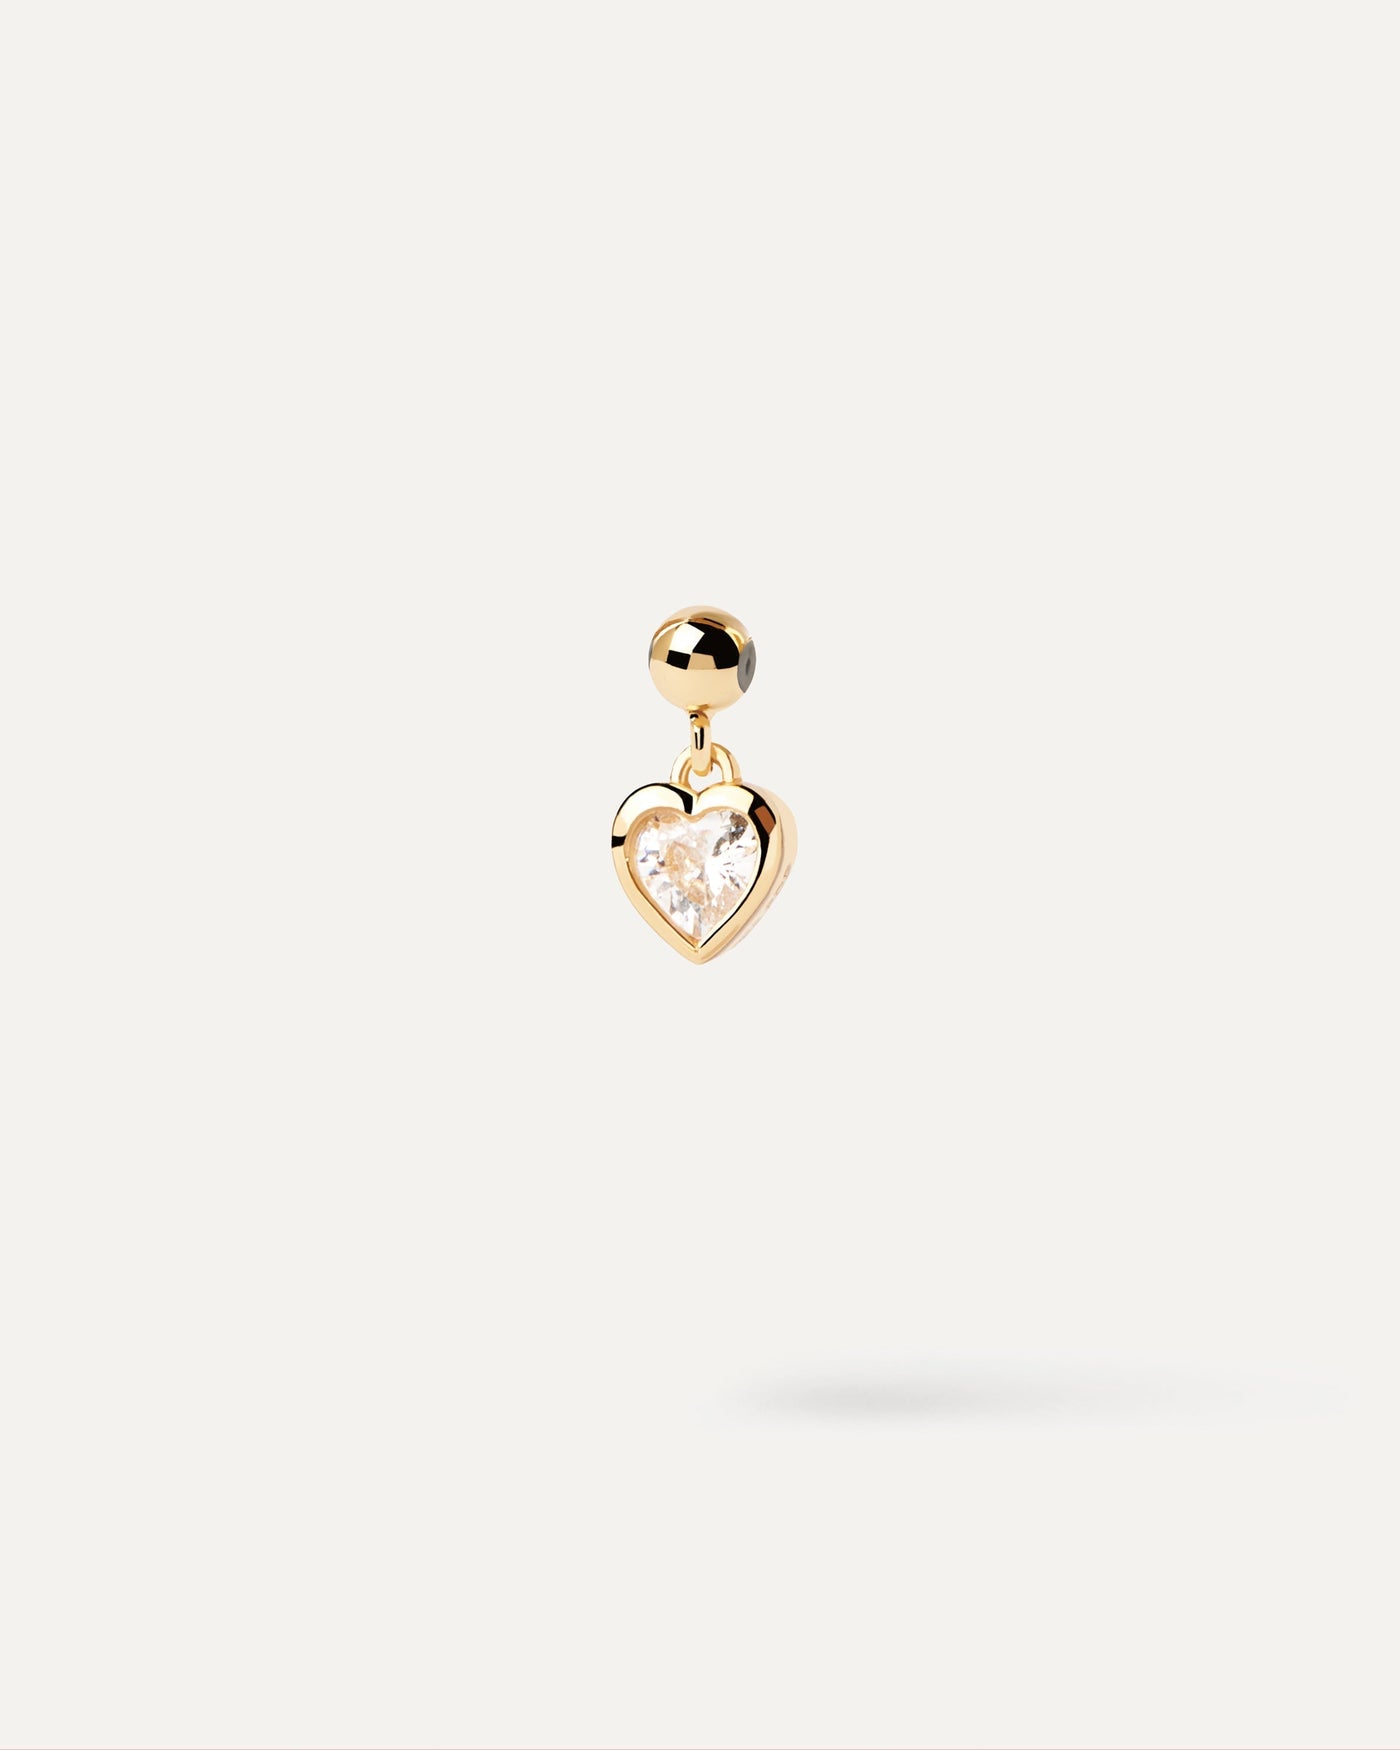 Charm Mini Cœur. Charm mini-cœur avec zircone blanche pour collier ou bracelet. Découvrez les dernières nouveautés de chez PDPAOLA. Commandez et recevez votre bijou en toute sérénité.